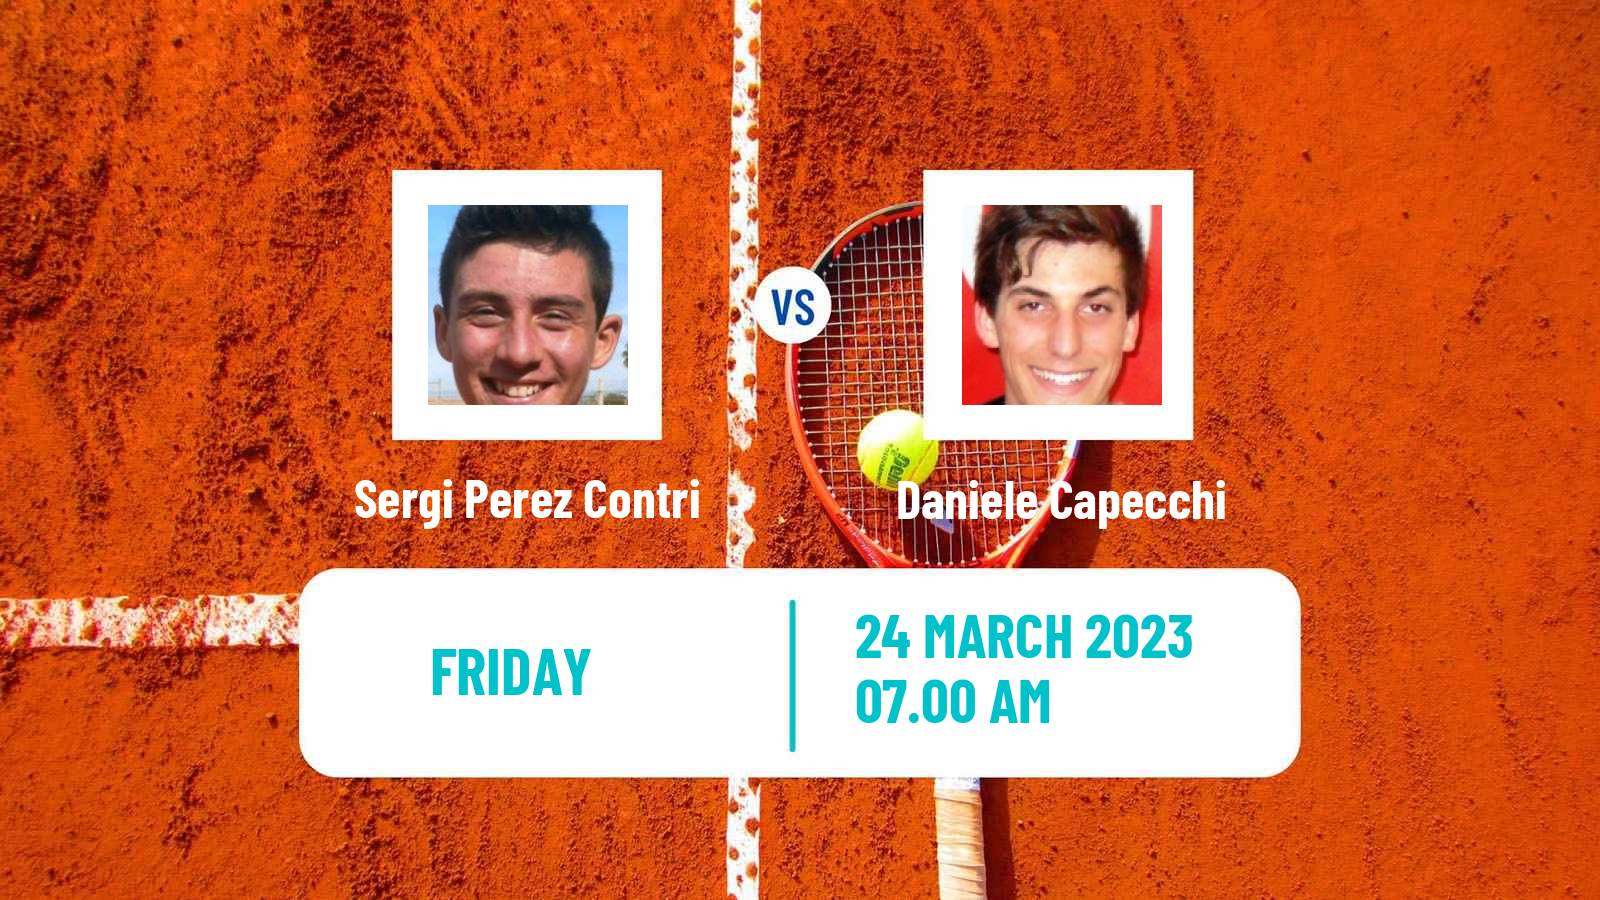 Tennis ITF Tournaments Sergi Perez Contri - Daniele Capecchi